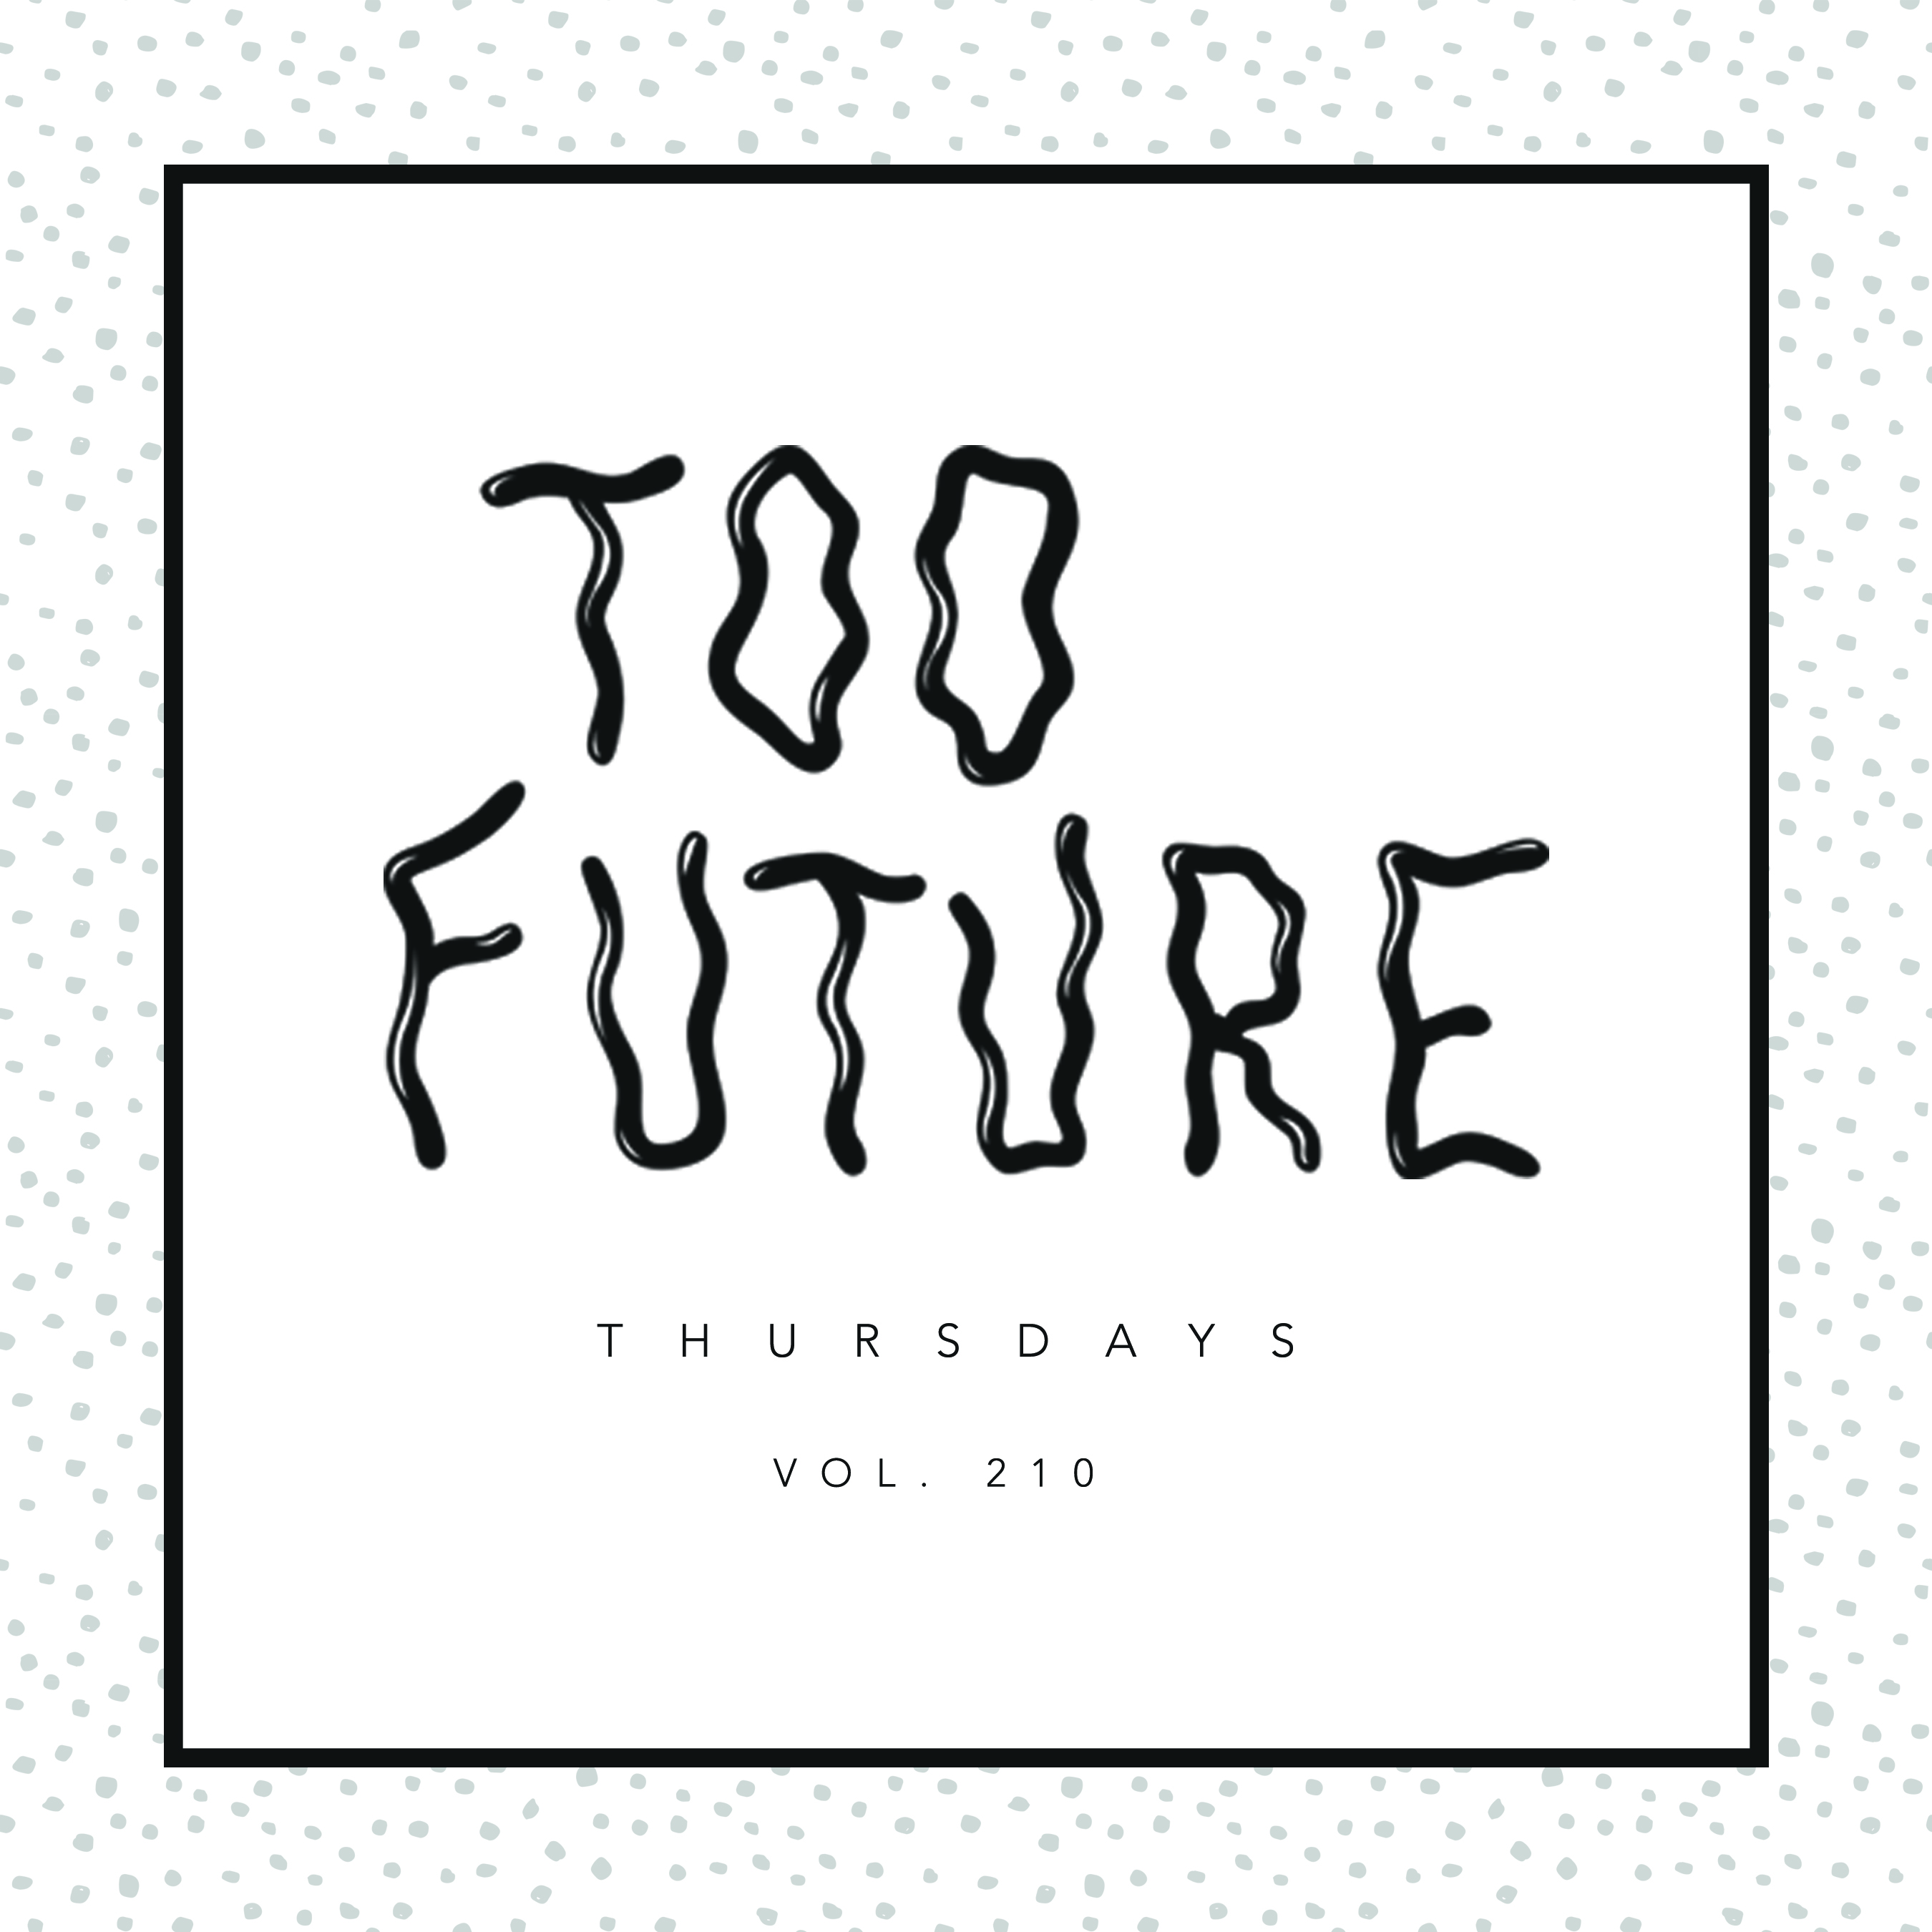 too-future-thursdays-vol-210